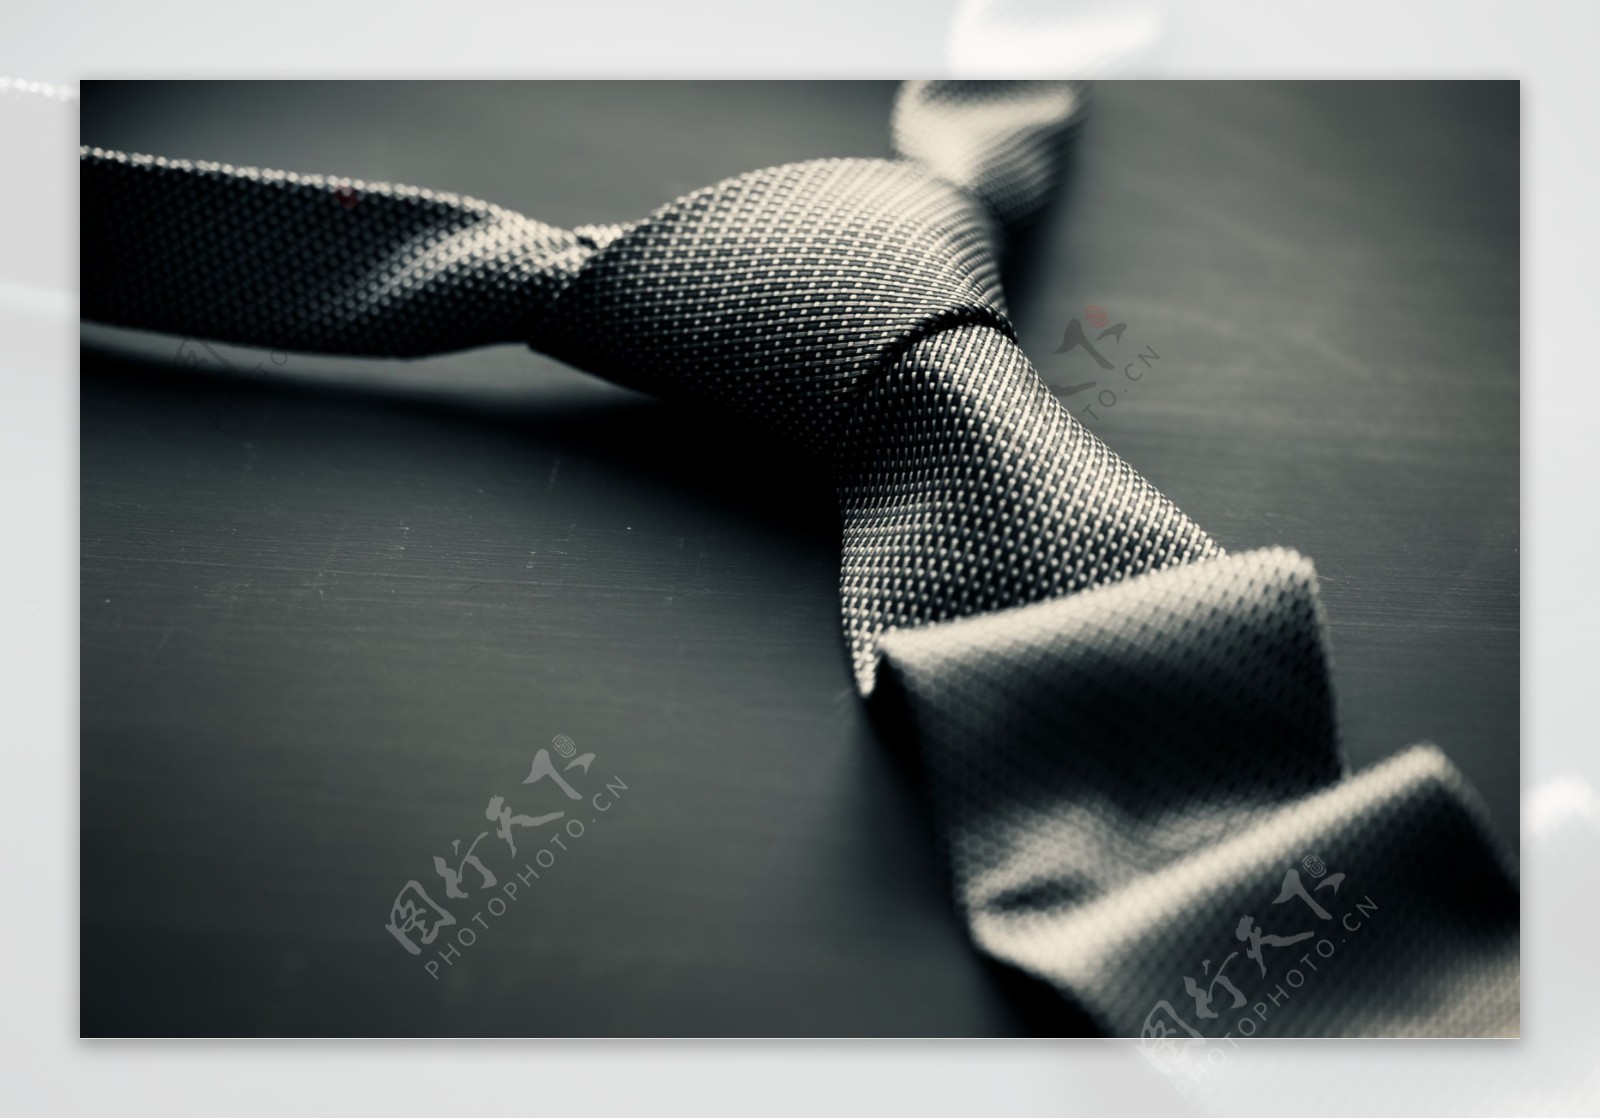 商务领带图片